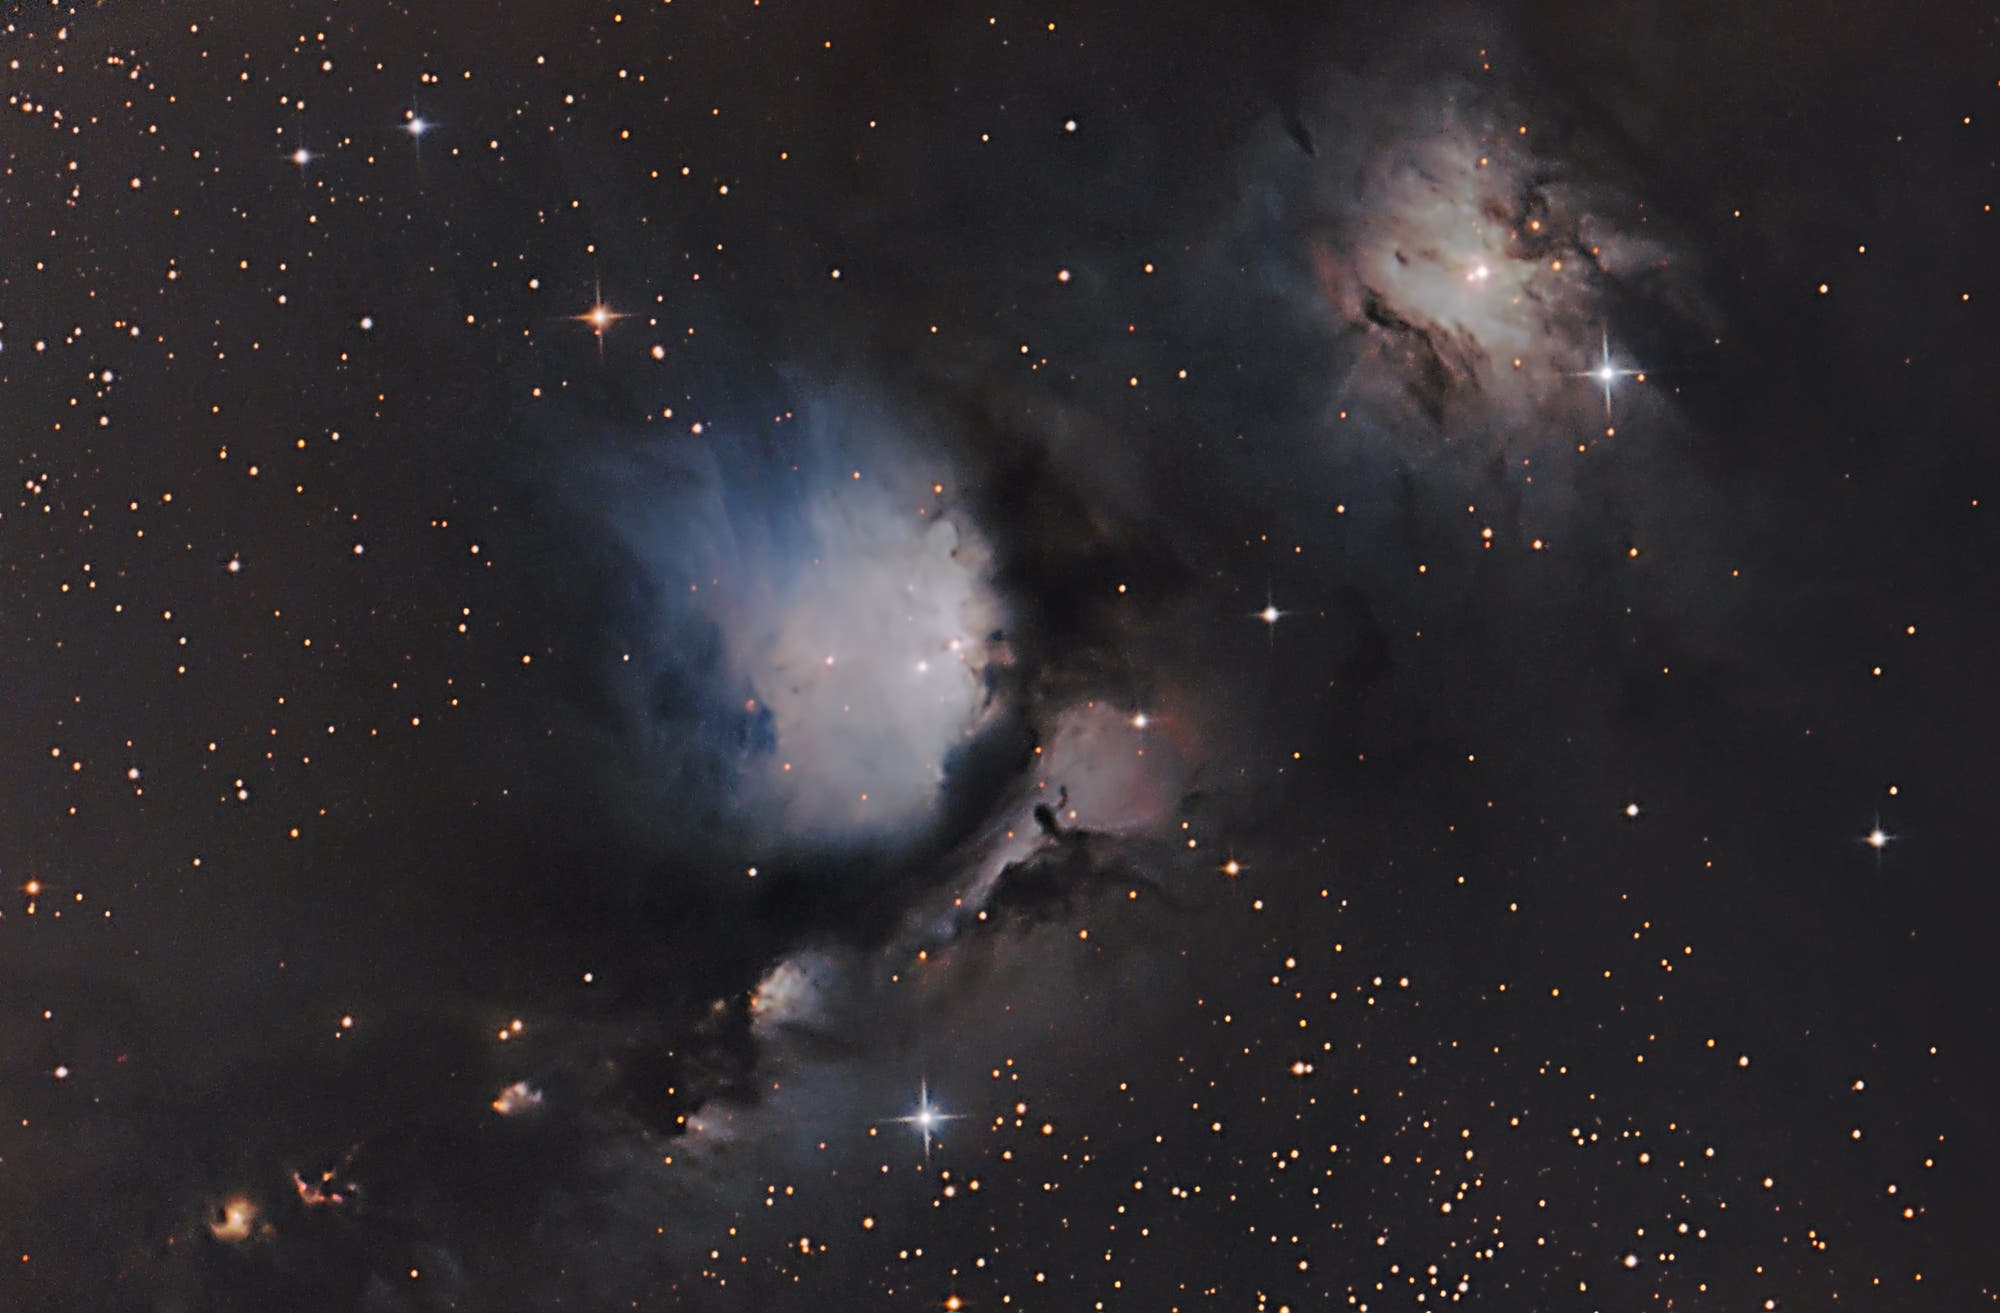 Messier 78